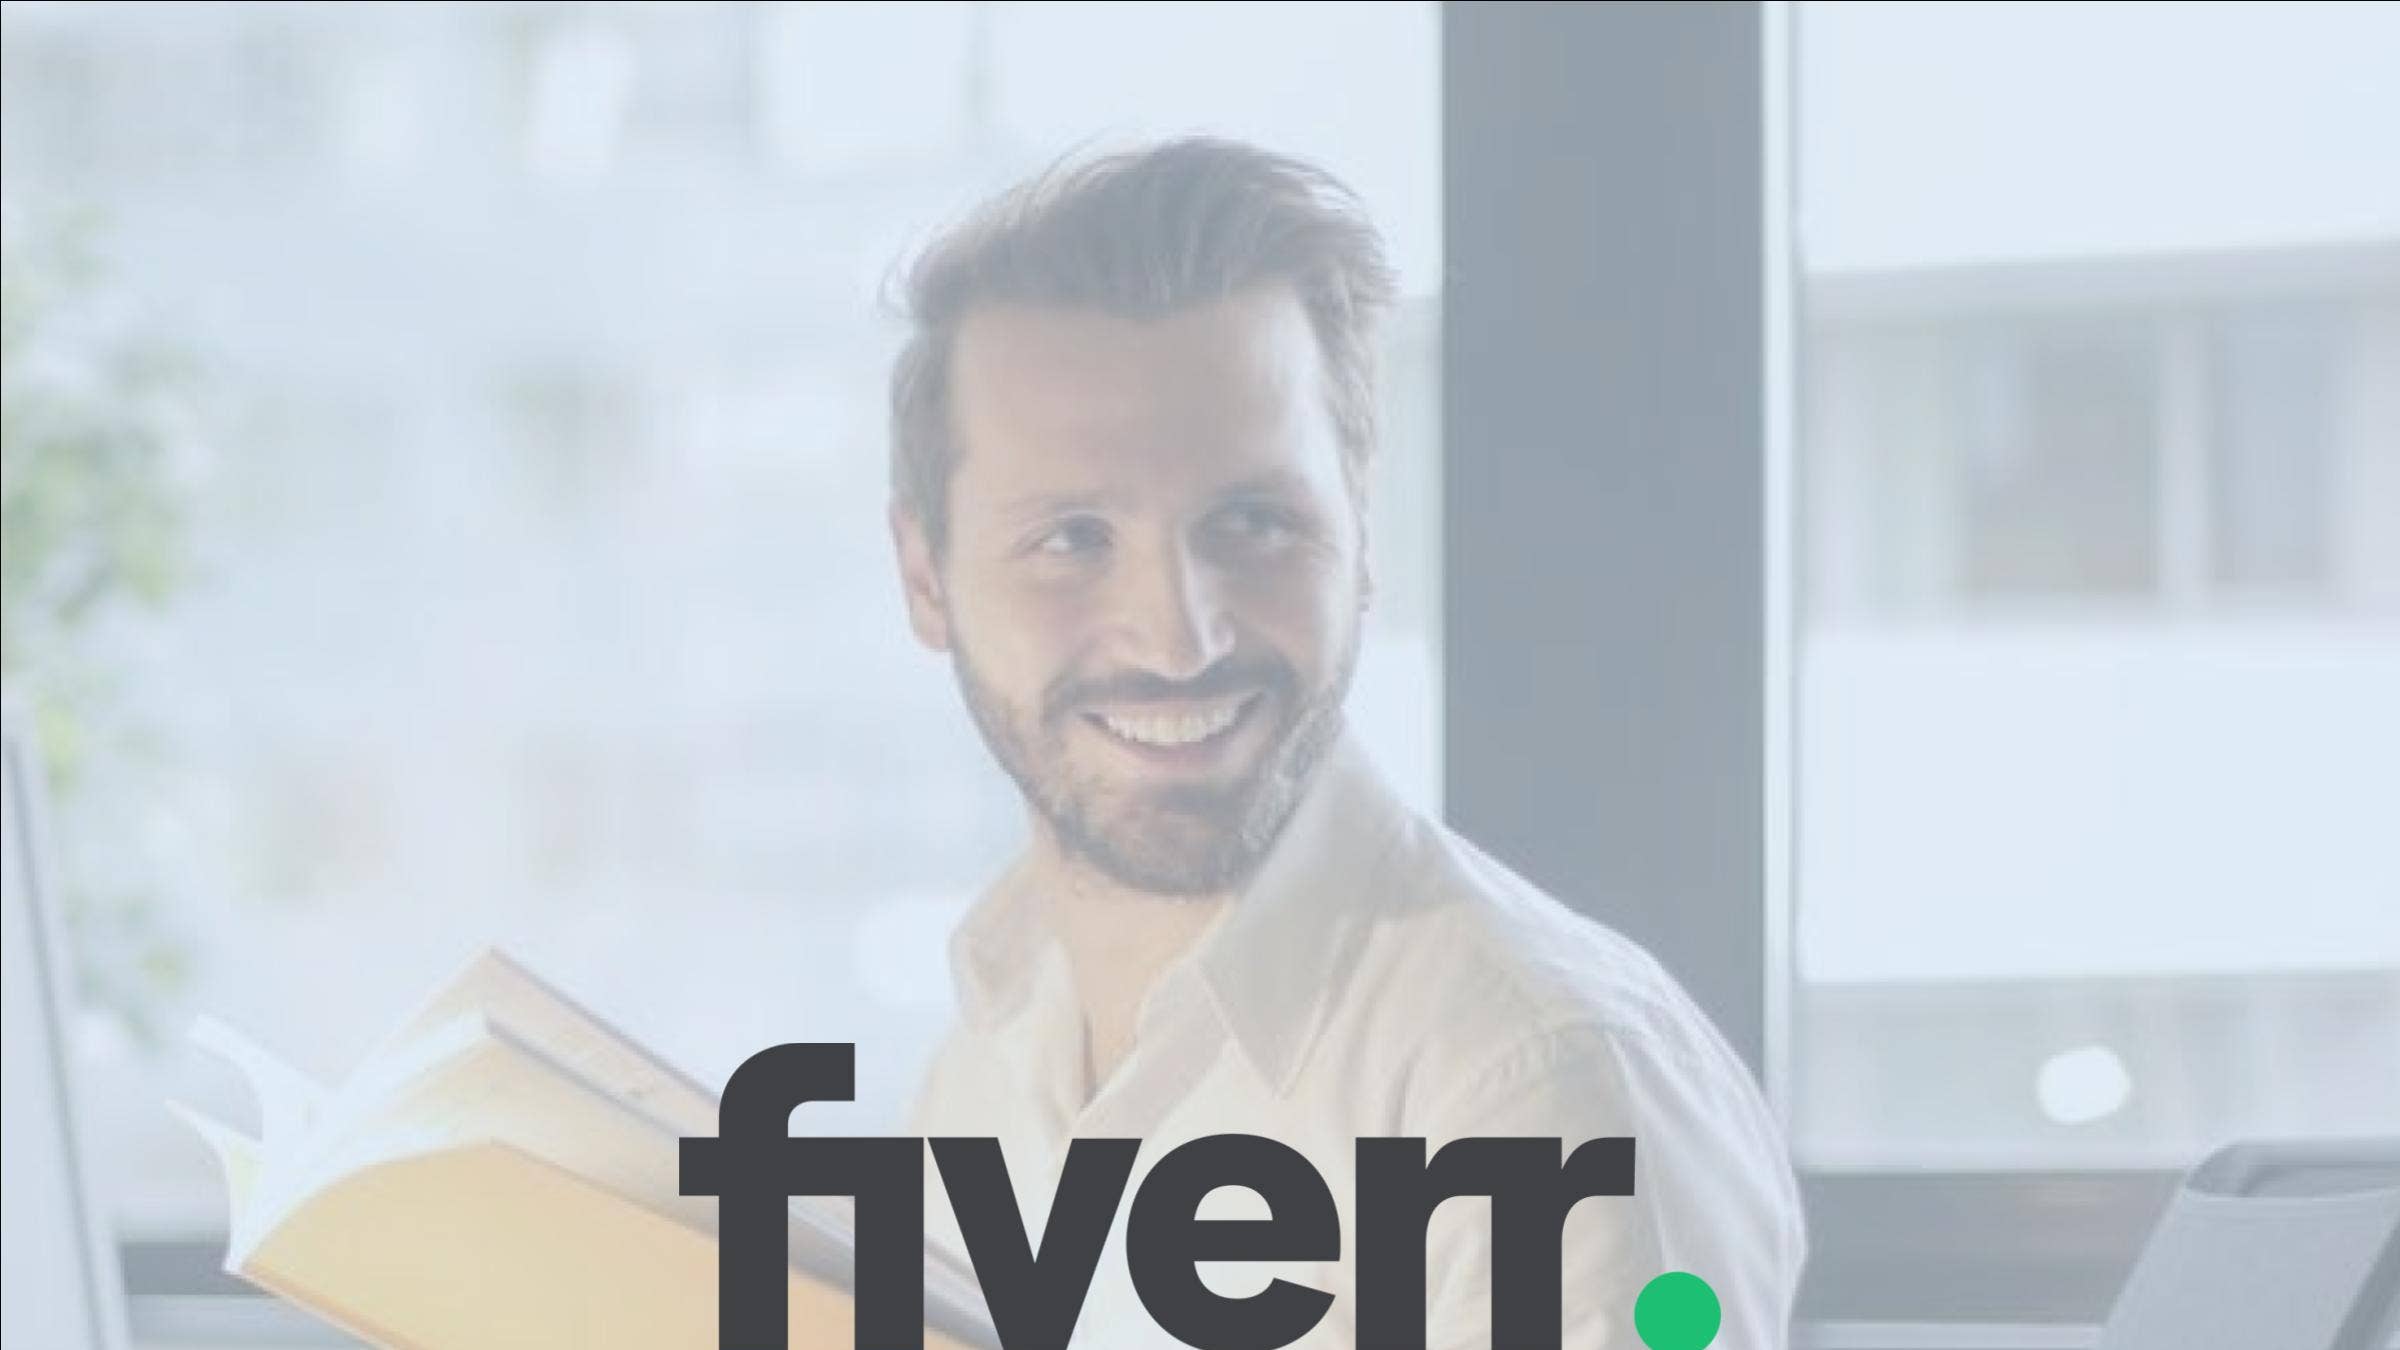 Fiverr Website